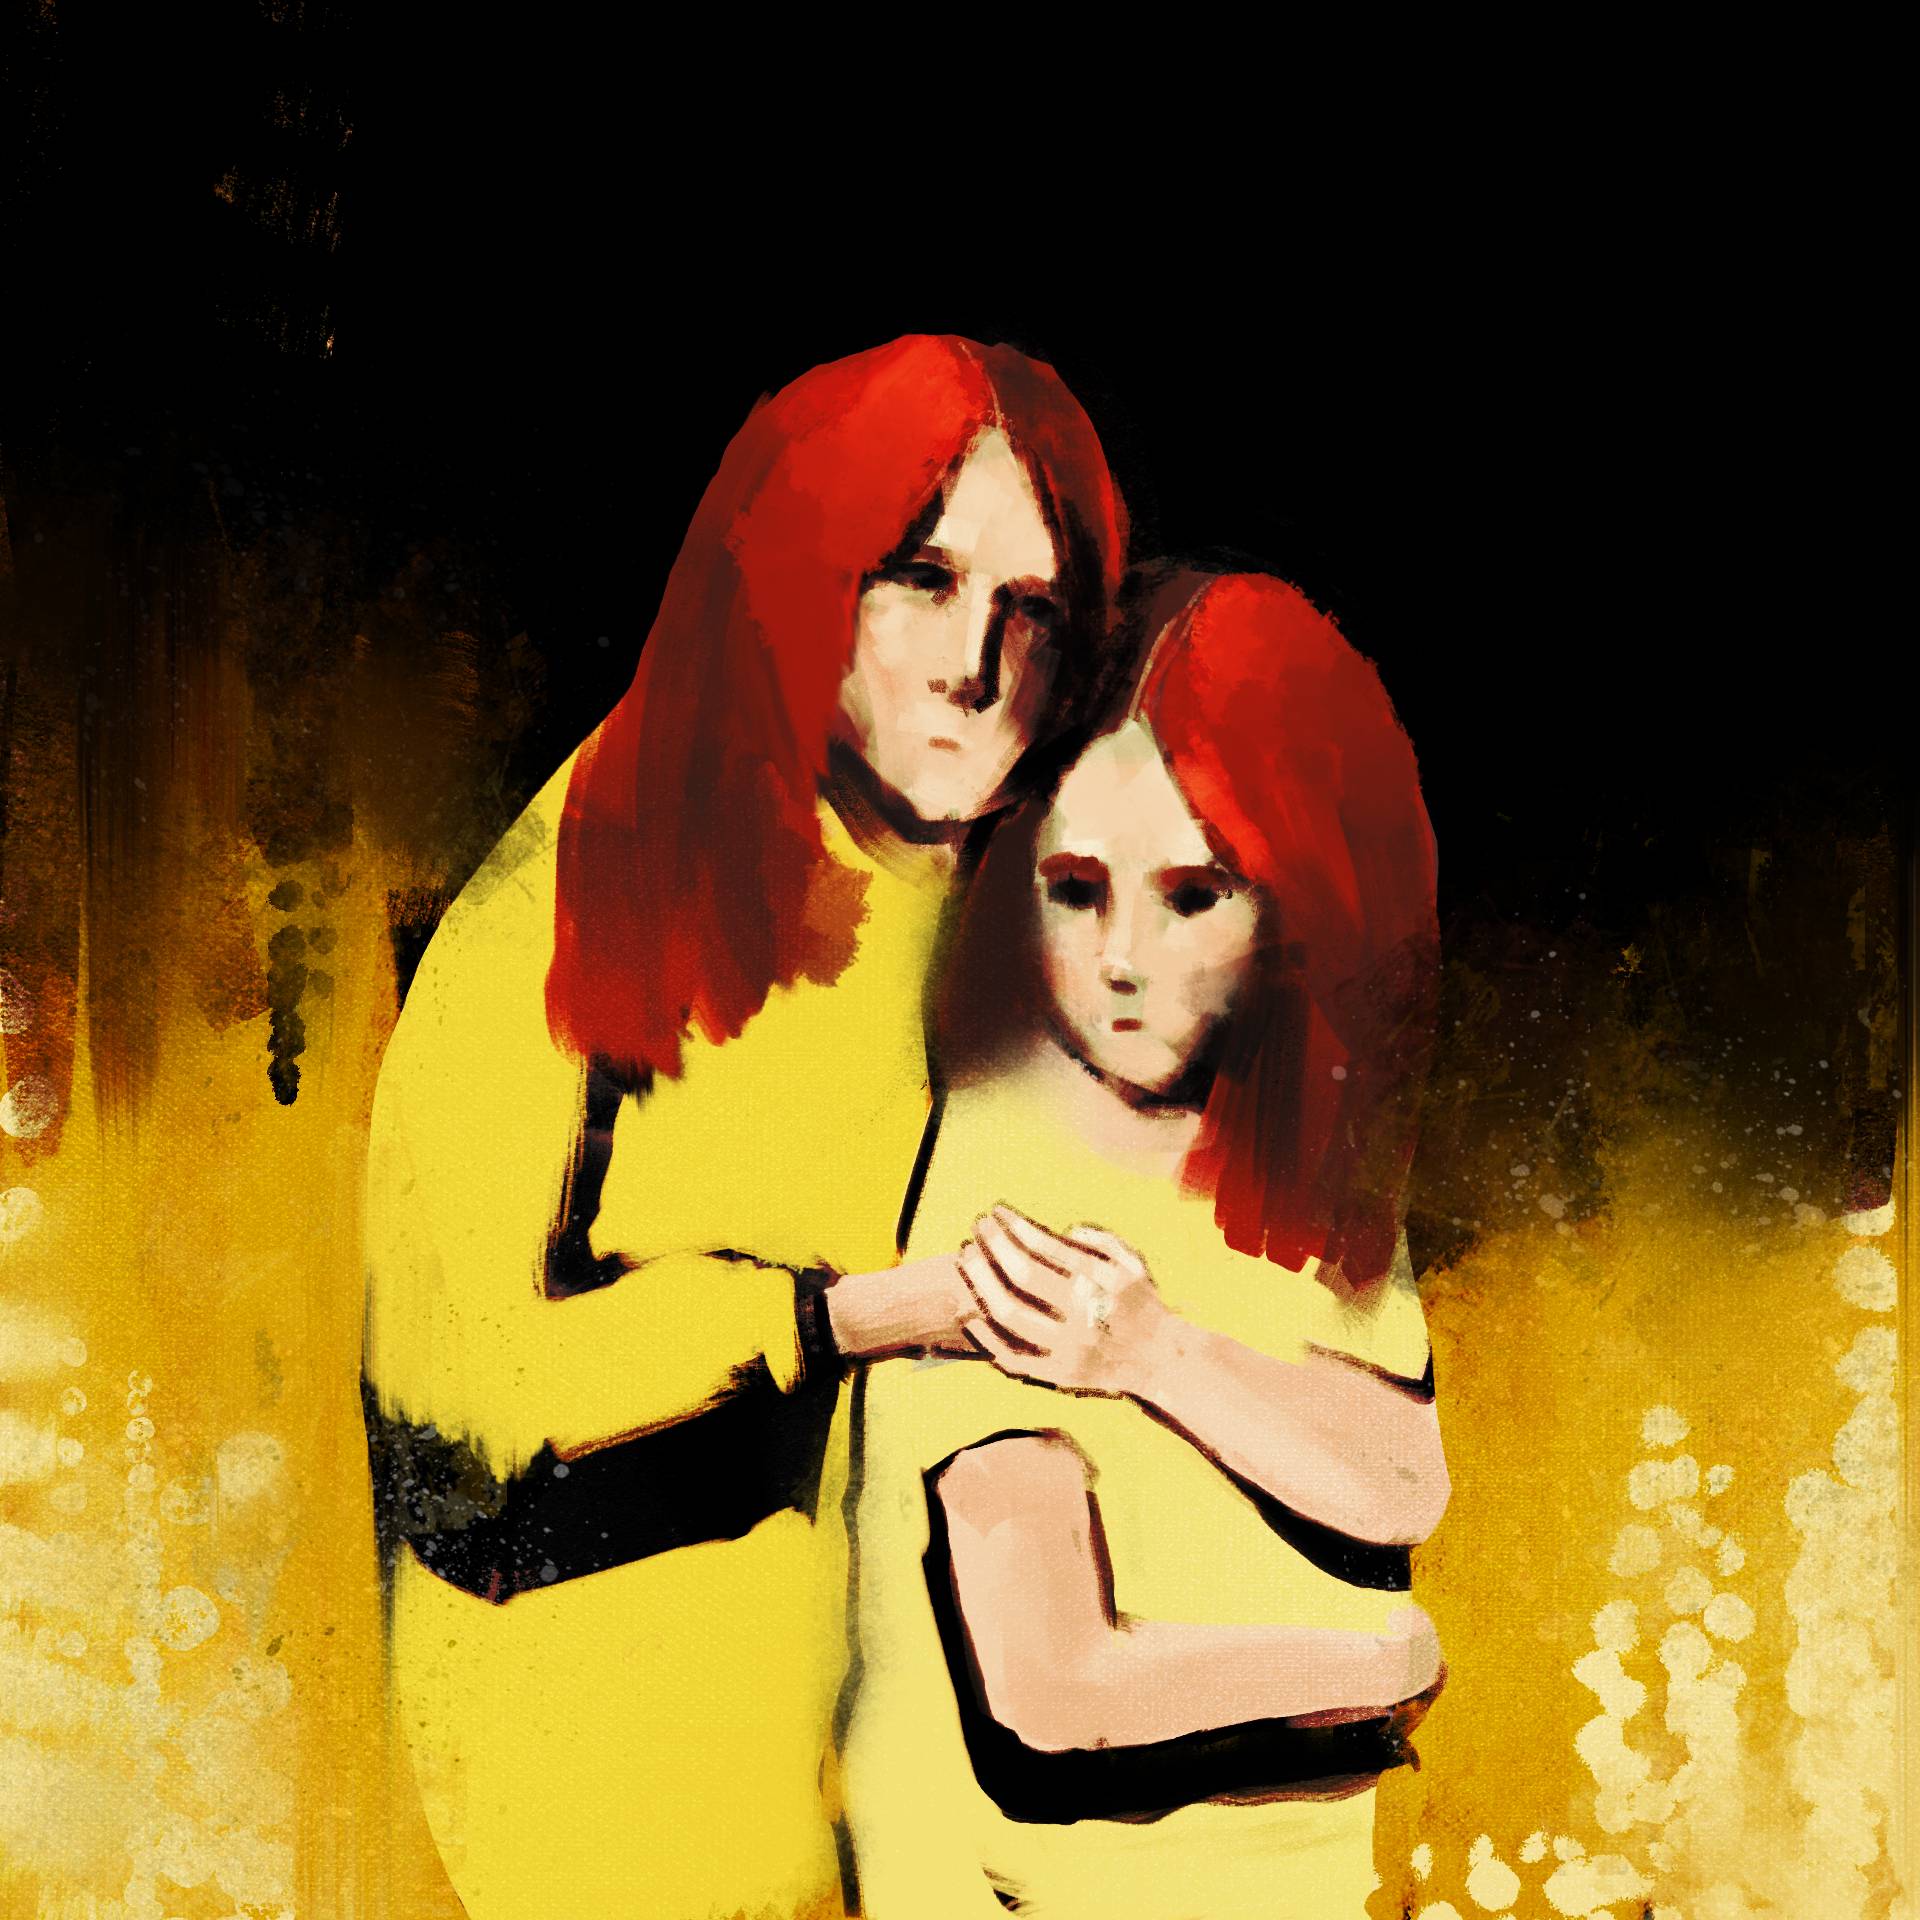 Rysunek przedstawia dwie osoby przytulone